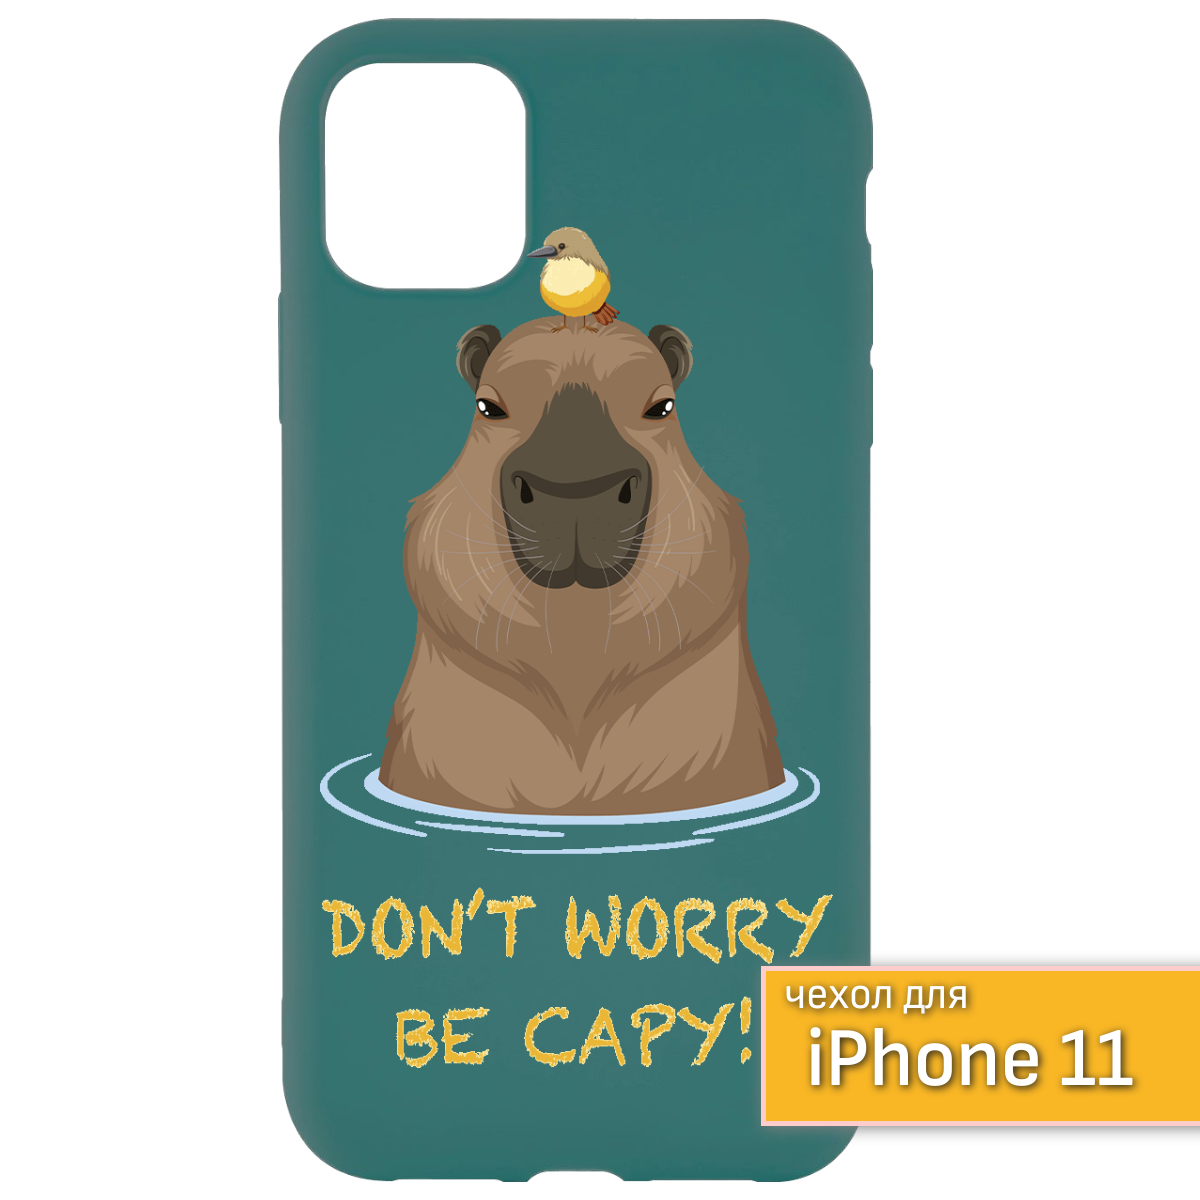 Защитный чехол на iPhone 11 Капибара/айфон 11 чехол Capybar/Капибара чехол айфон 11, чехол зеленый